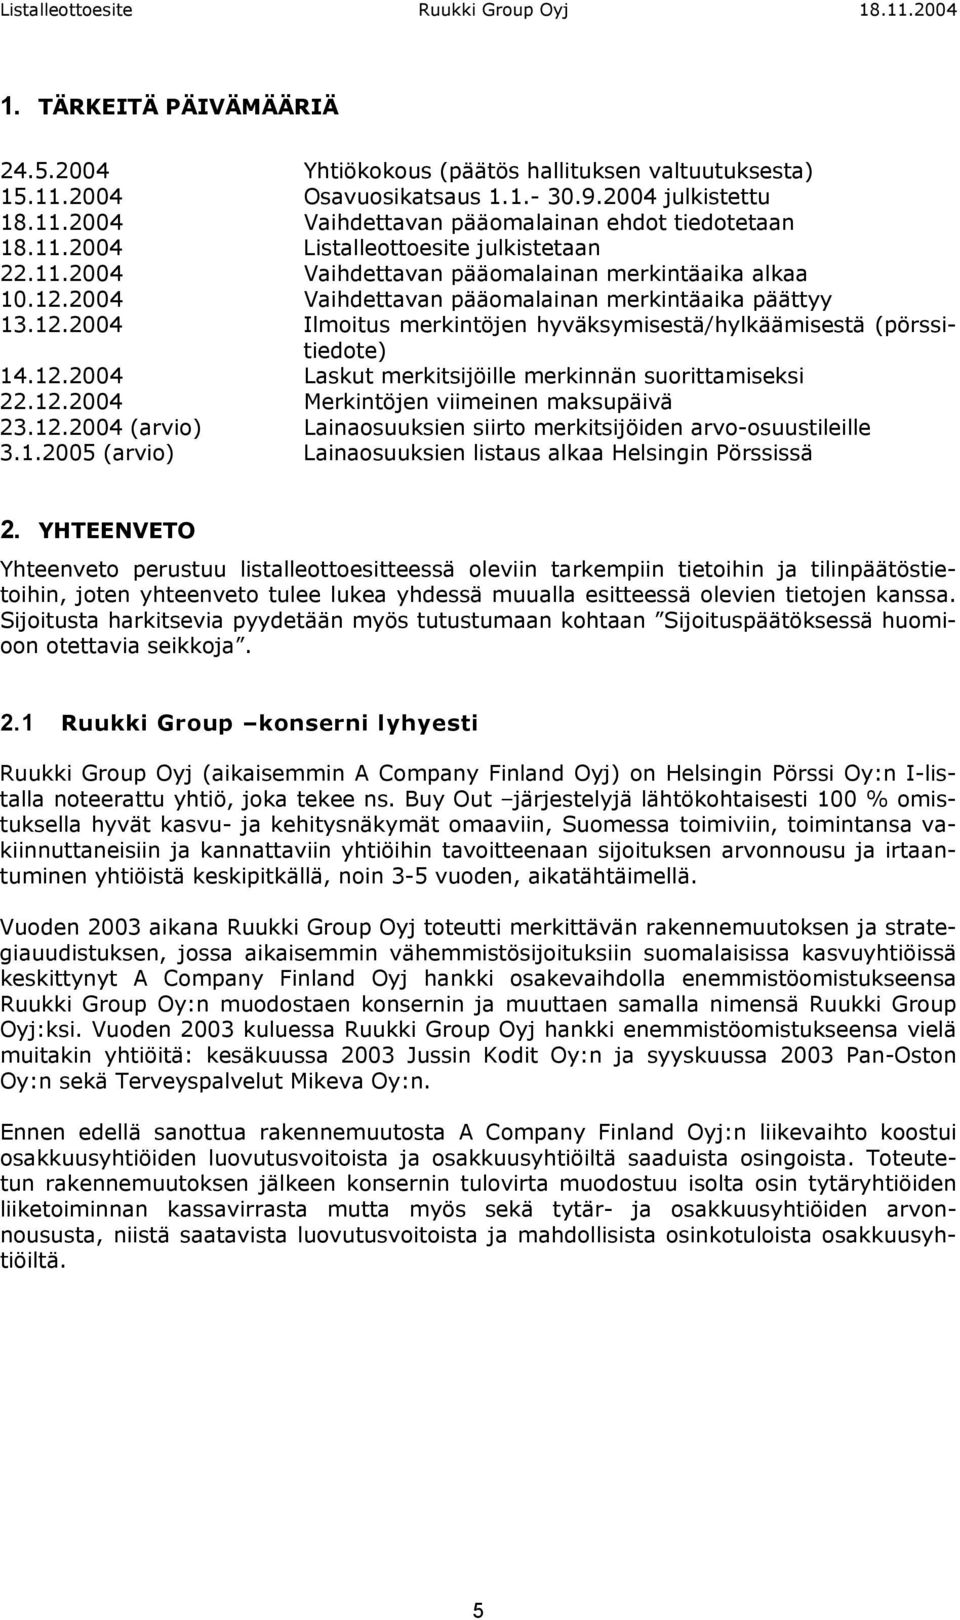 12.2004 Merkintöjen viimeinen maksupäivä 23.12.2004 (arvio) Lainaosuuksien siirto merkitsijöiden arvo-osuustileille 3.1.2005 (arvio) Lainaosuuksien listaus alkaa Helsingin Pörssissä 2.